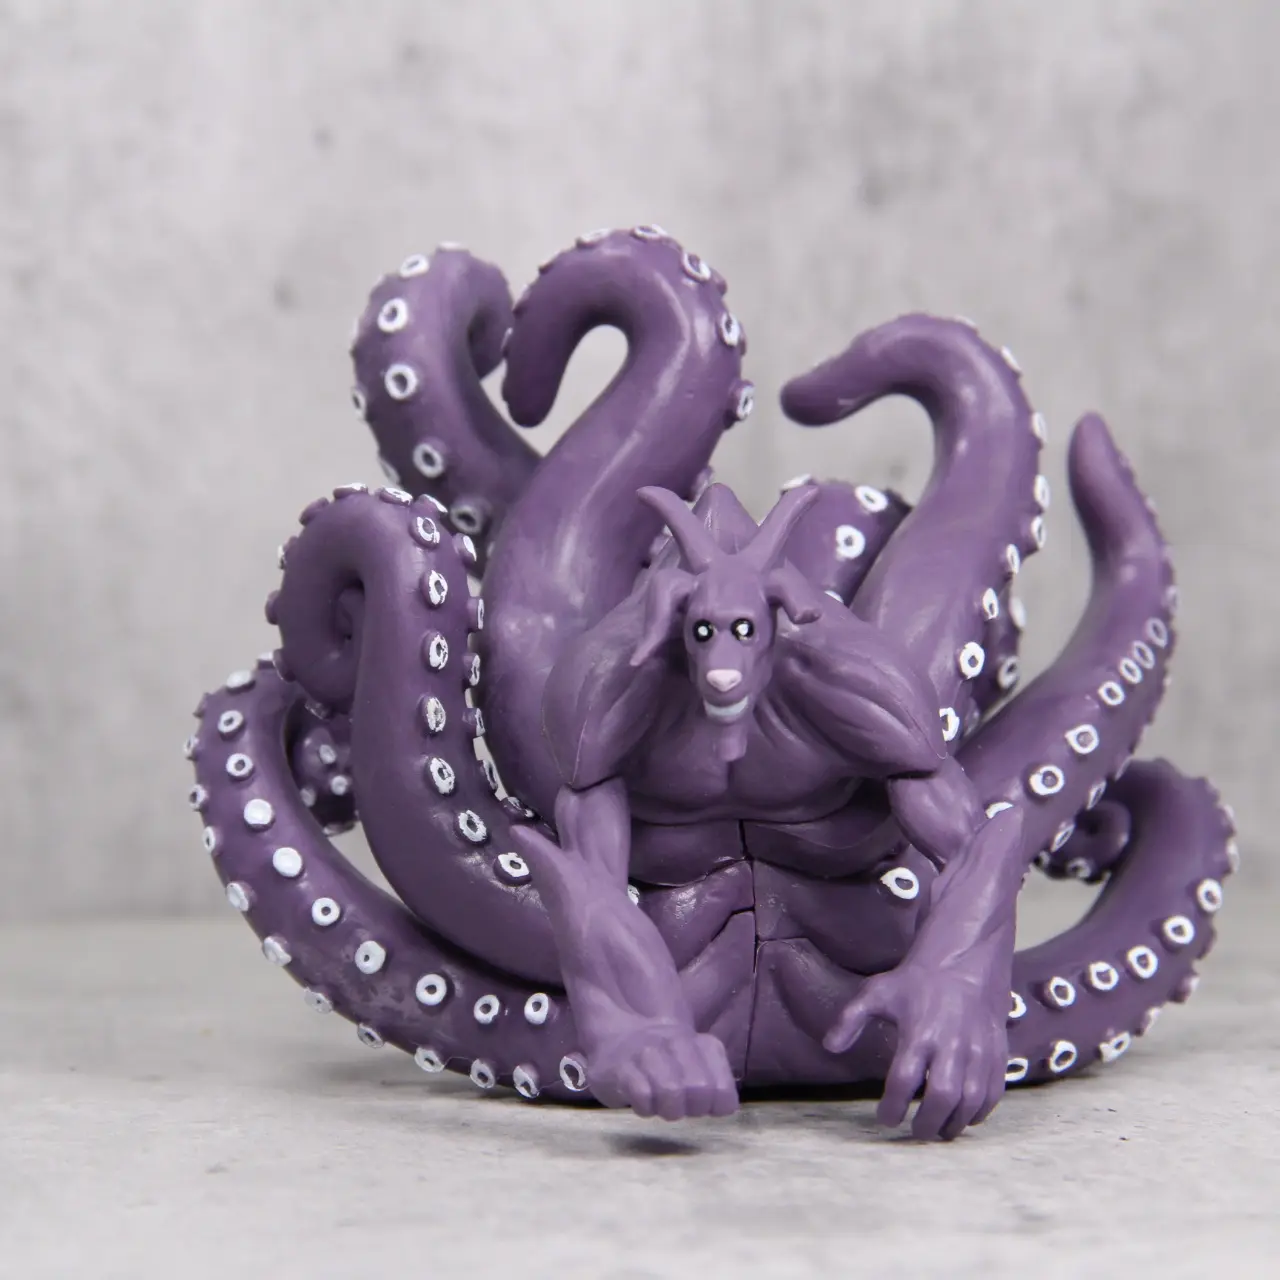 8つの尾の卸売フランス語版Nar-utoKirabi Tail Beast Resonance Octopus 8つの尾手作りの装飾モデルフィギュア